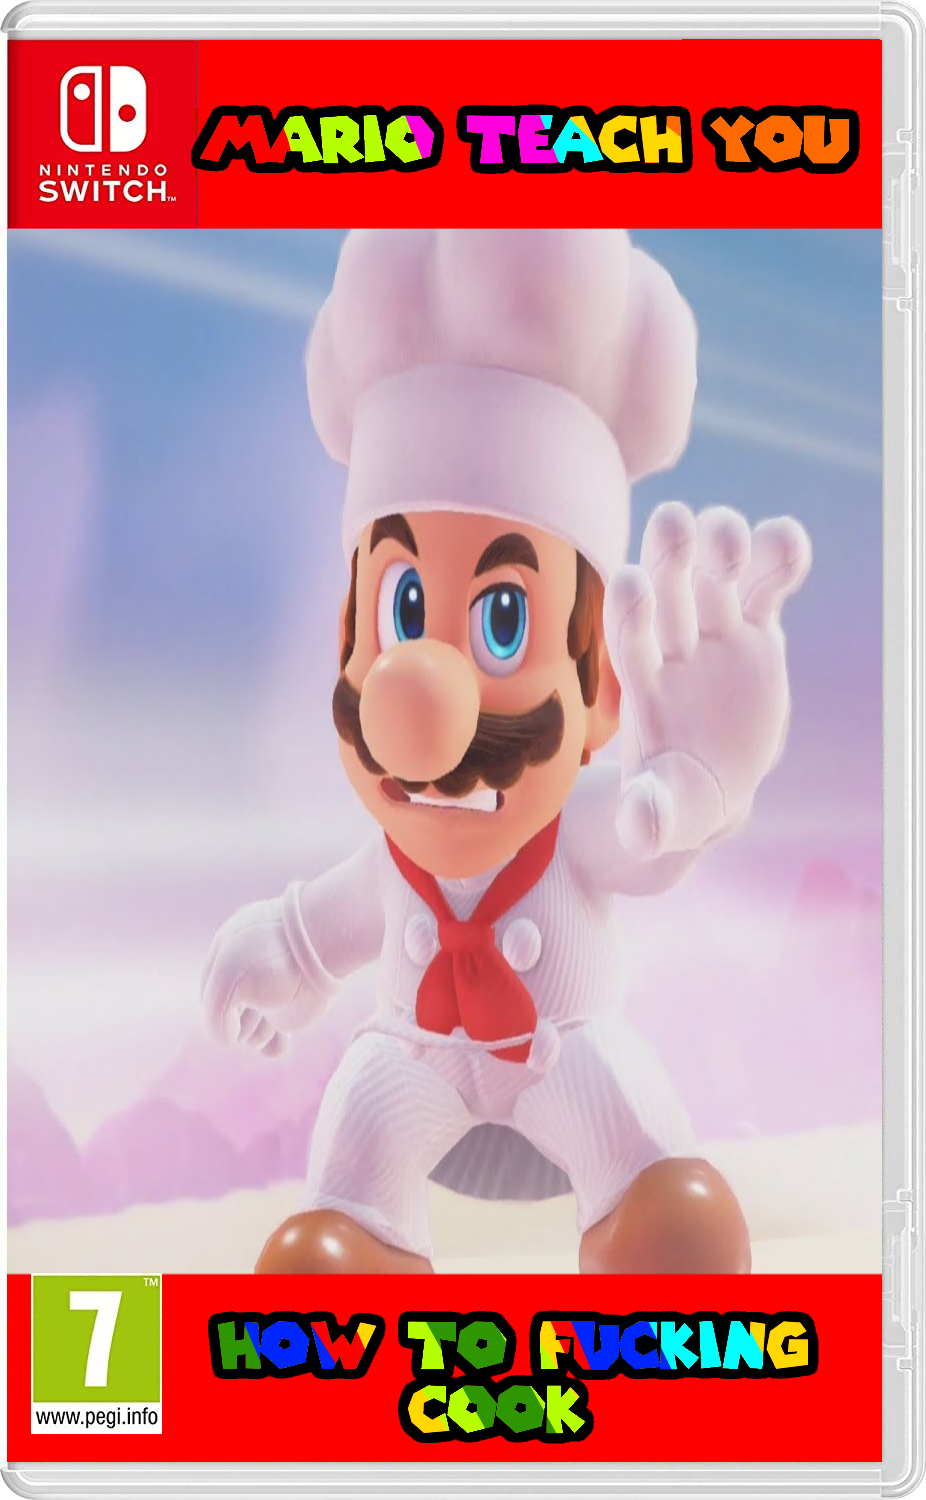 Mario Teach You How To Fucking Cook, Fantendo - Game Ideas & More